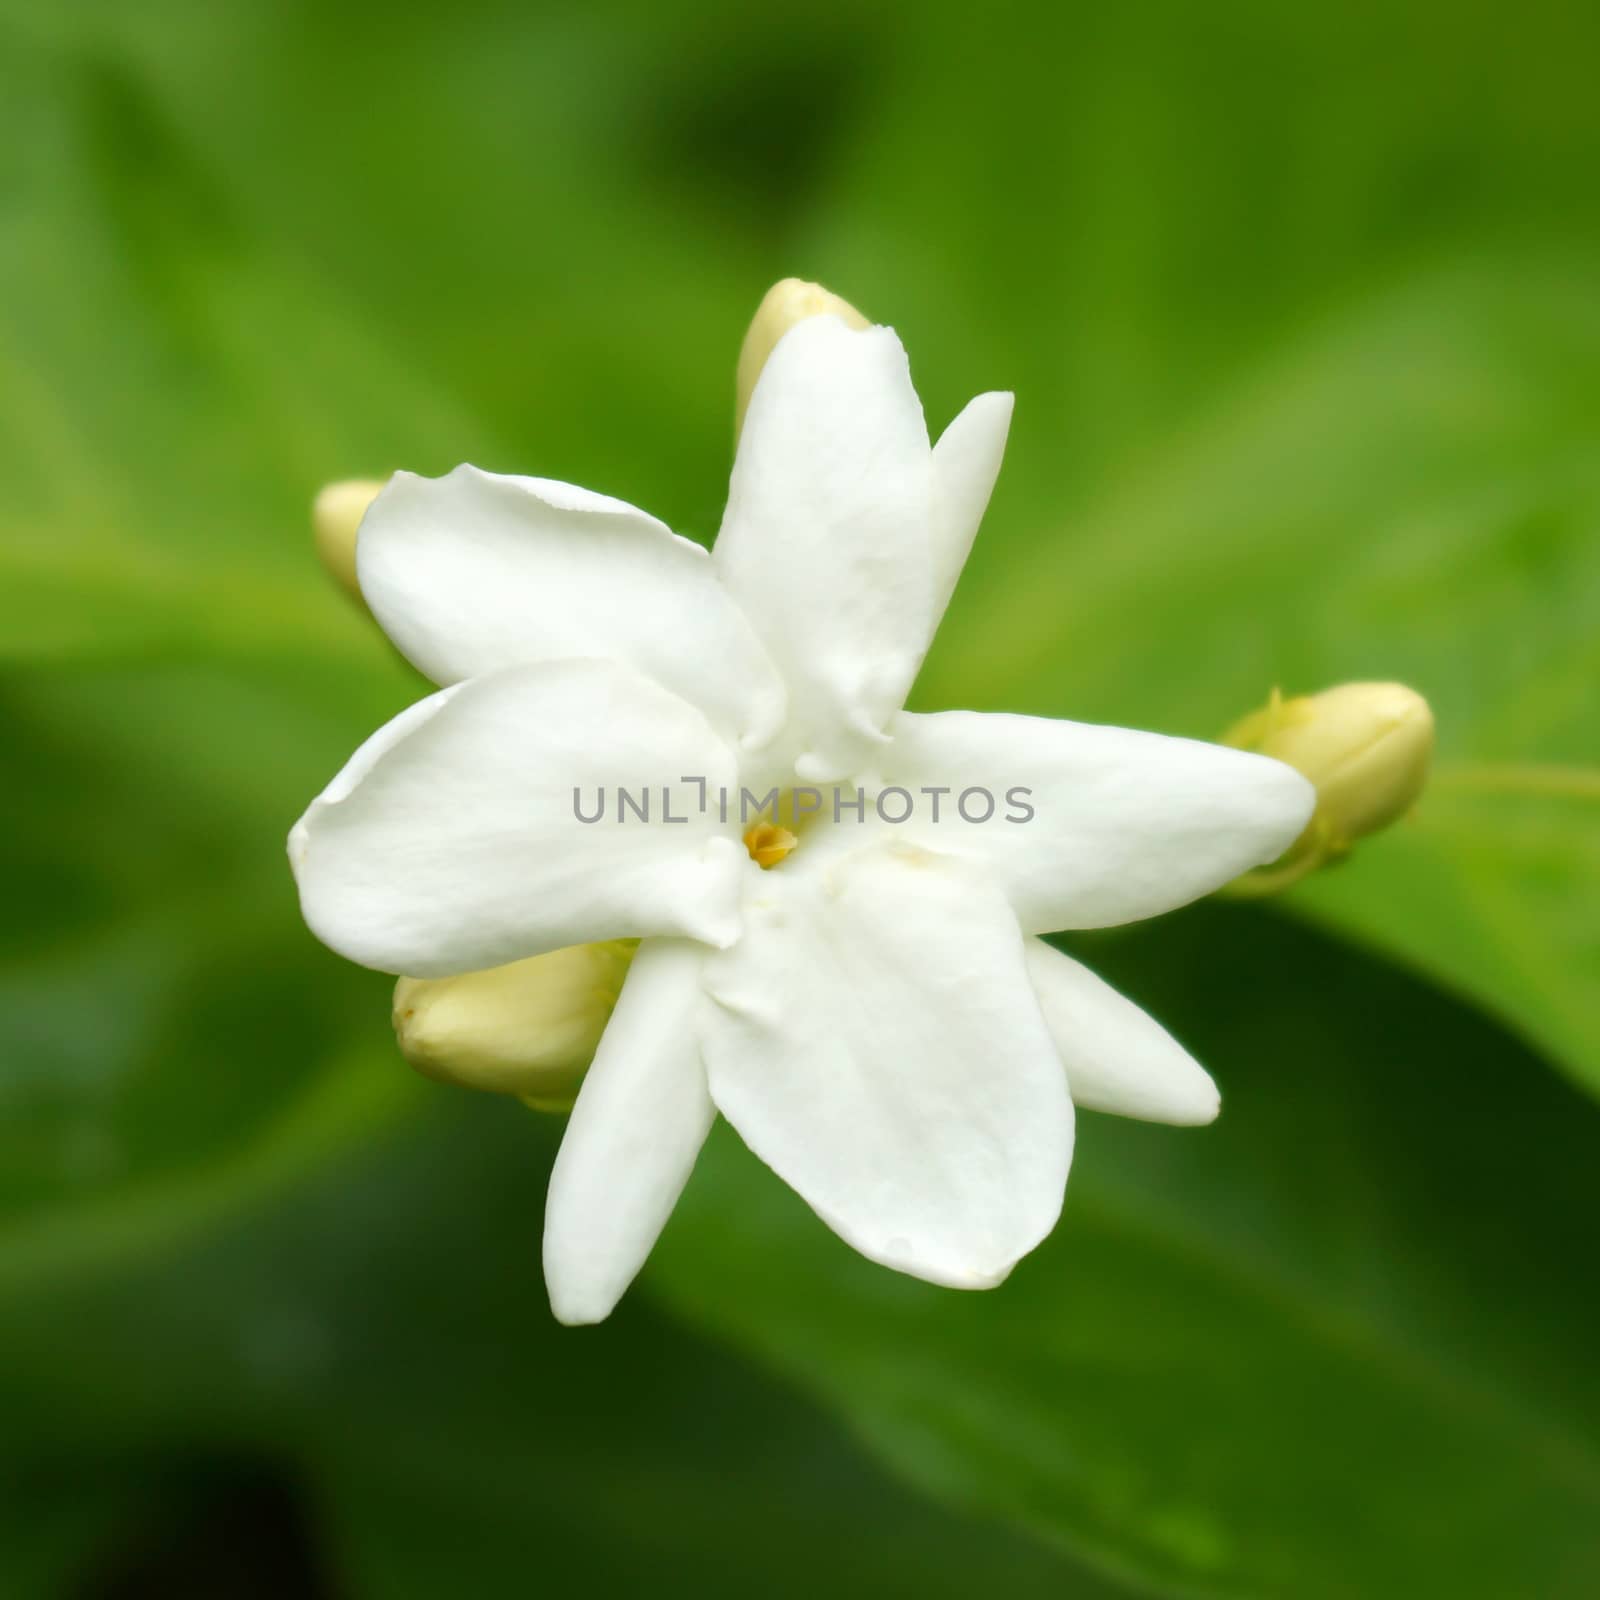 White Jasmine Flower by Noppharat_th